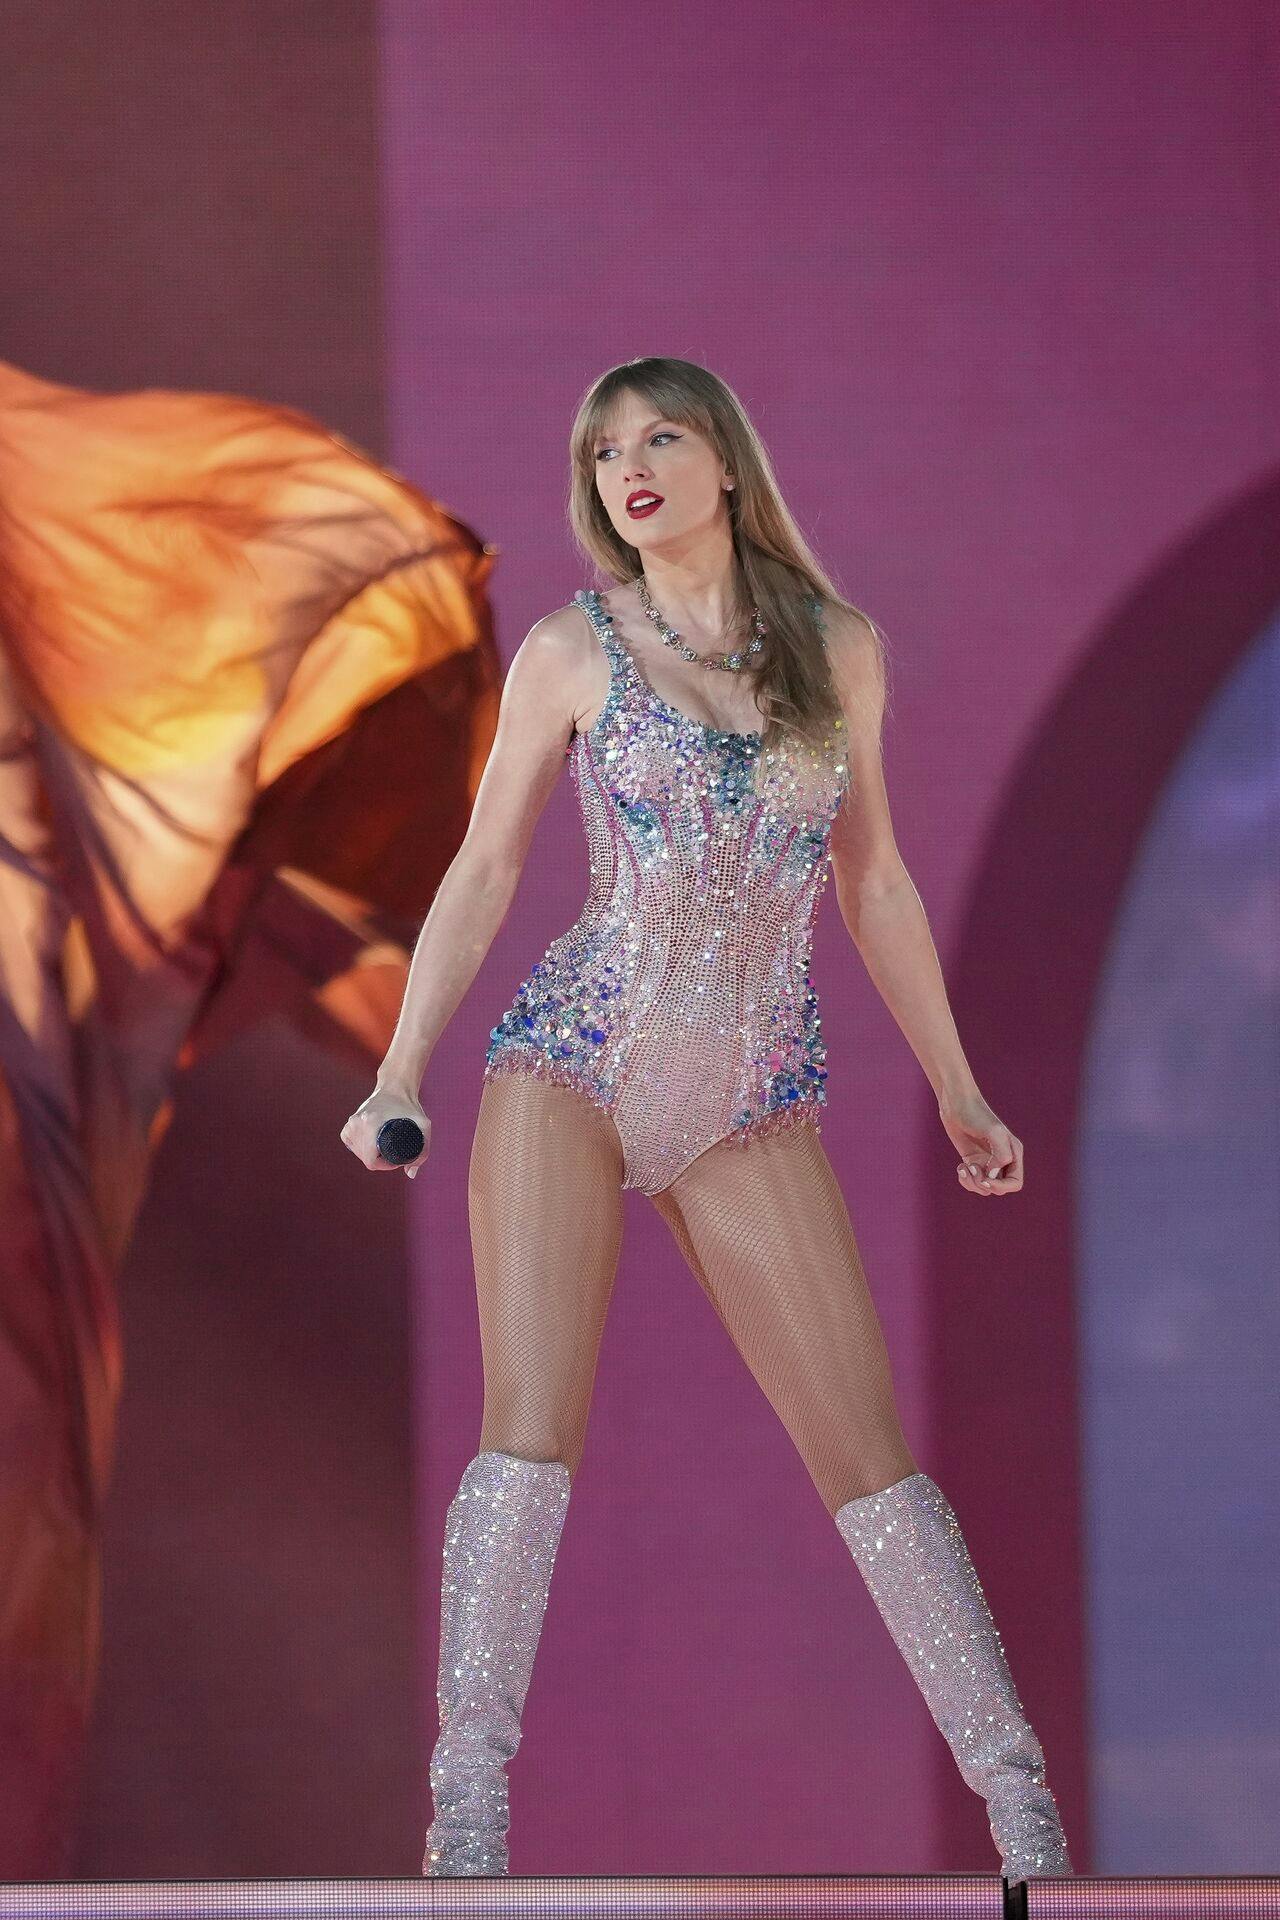 Det er blandt andet den vildt succesfulde verdensturné "The Eras Tour", der har sikret Taylor Swift en plads i milliardklassen.